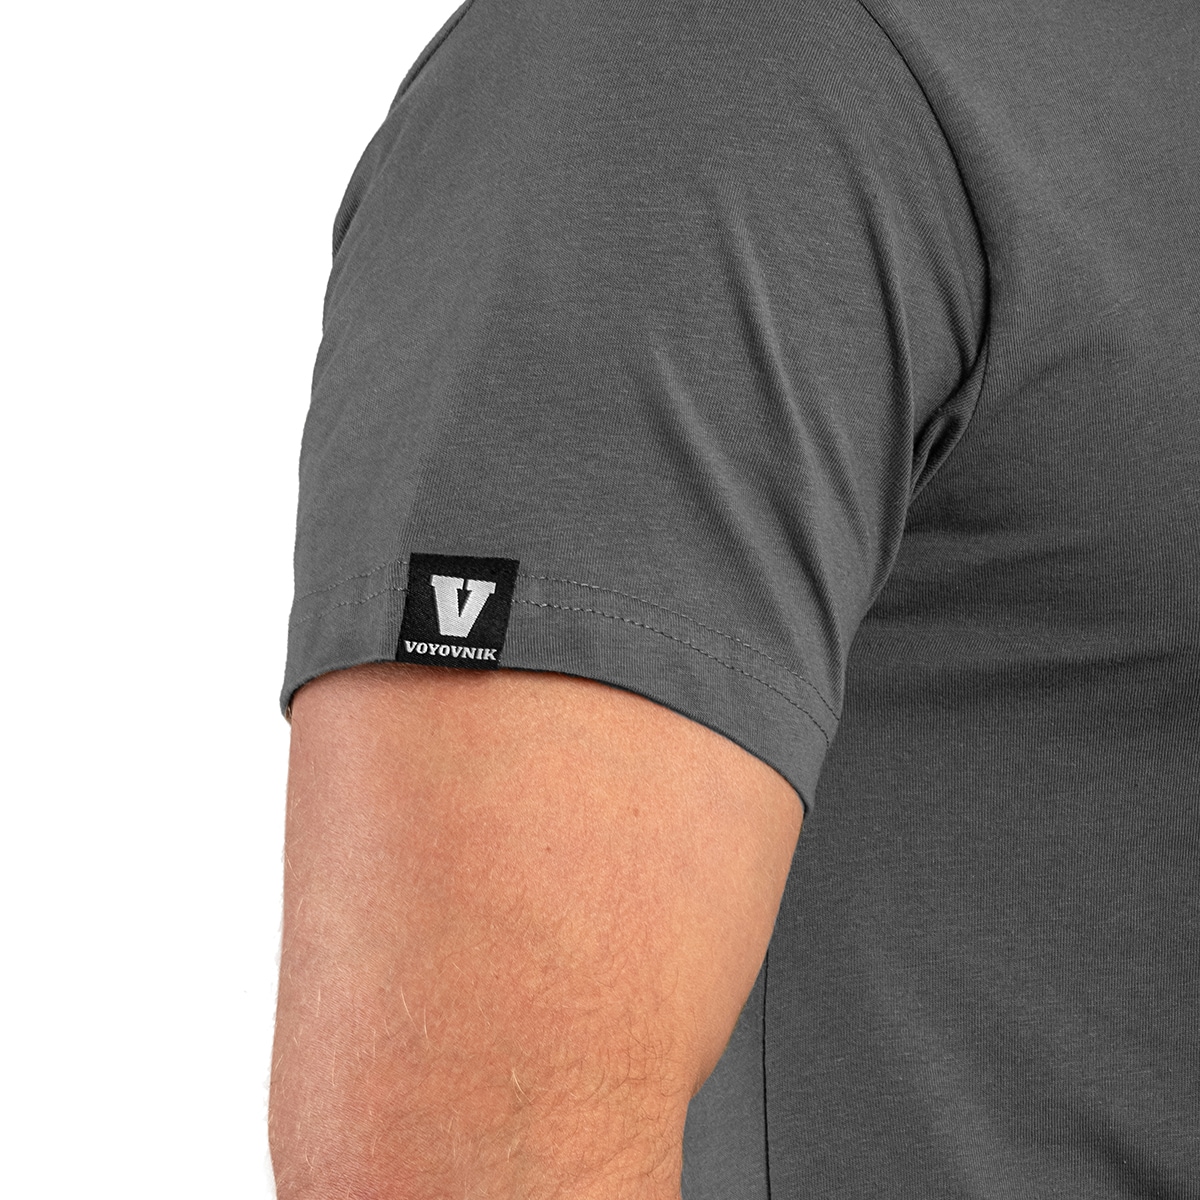 Koszulka T-shirt Voyovnik Kompas Black/White - Szara